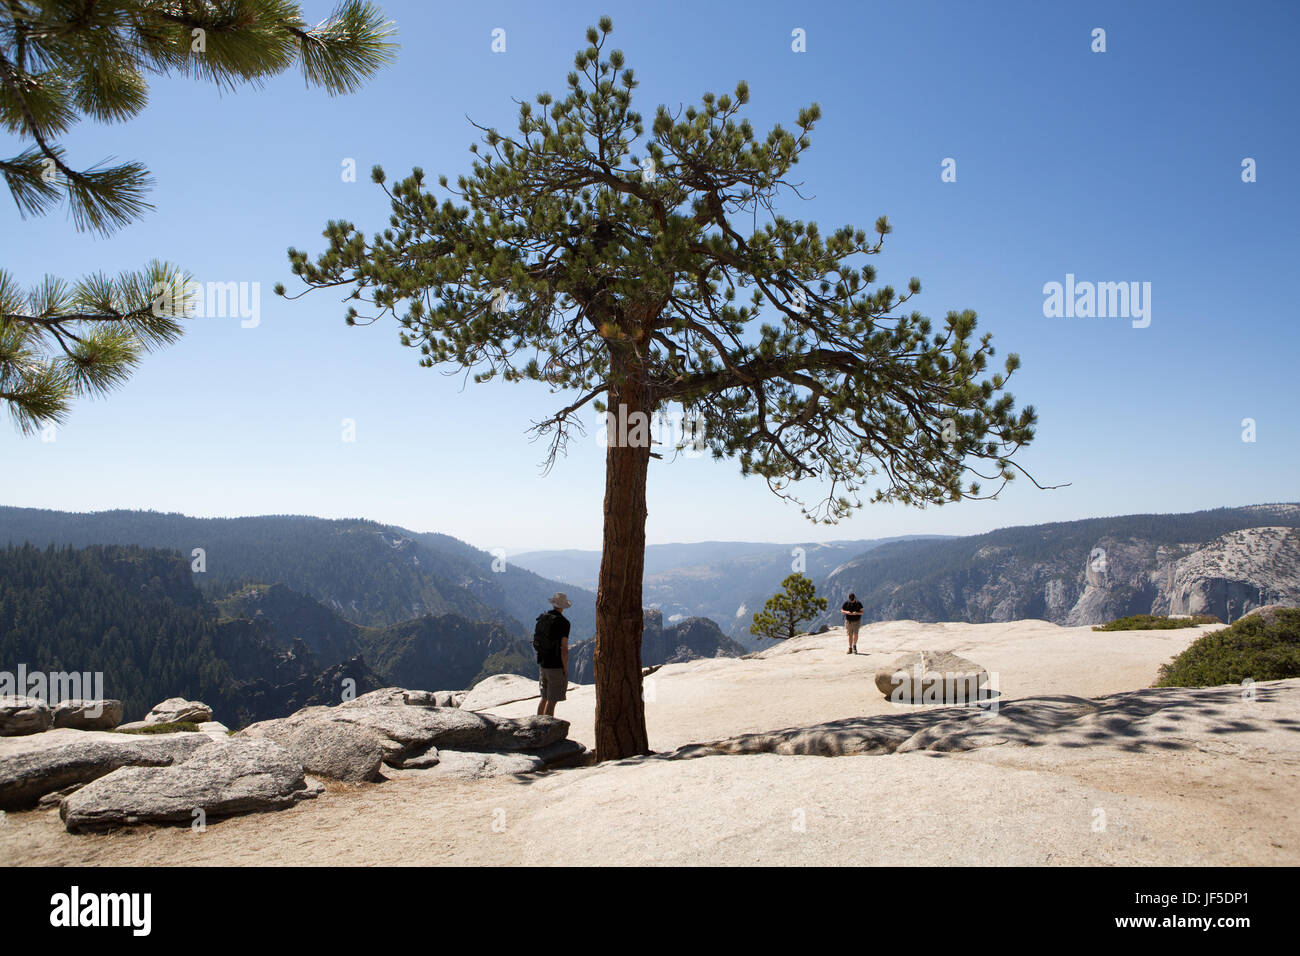 Varios excursionistas stand en Taft punto pico, un sendero de trekking que ofrece vistas al valle de Yosemite. Foto de stock